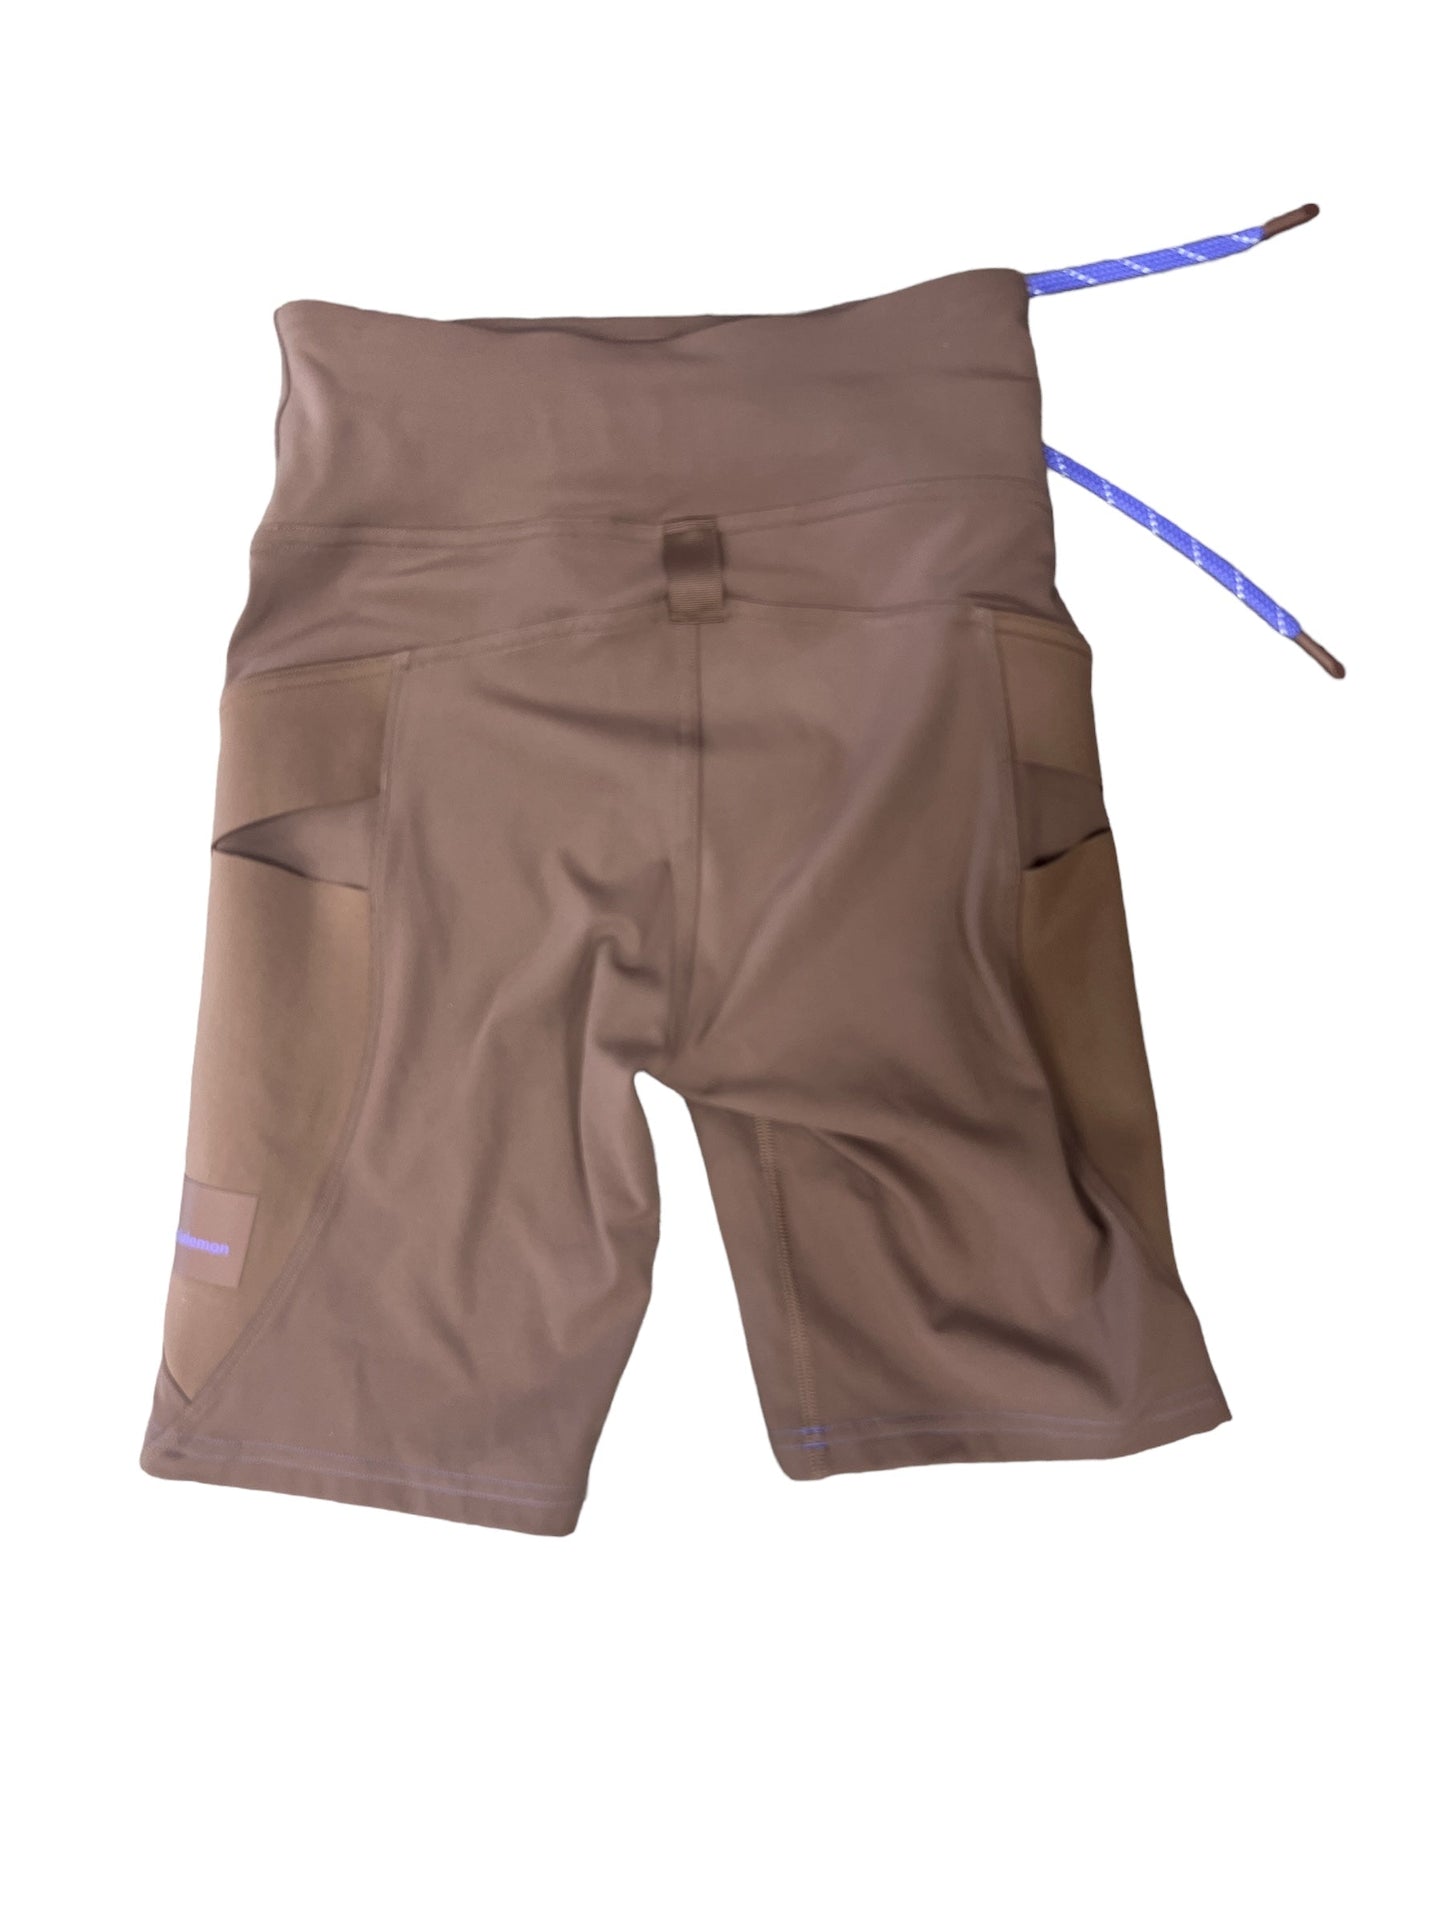 Brown Athletic Shorts Lululemon, Size 4